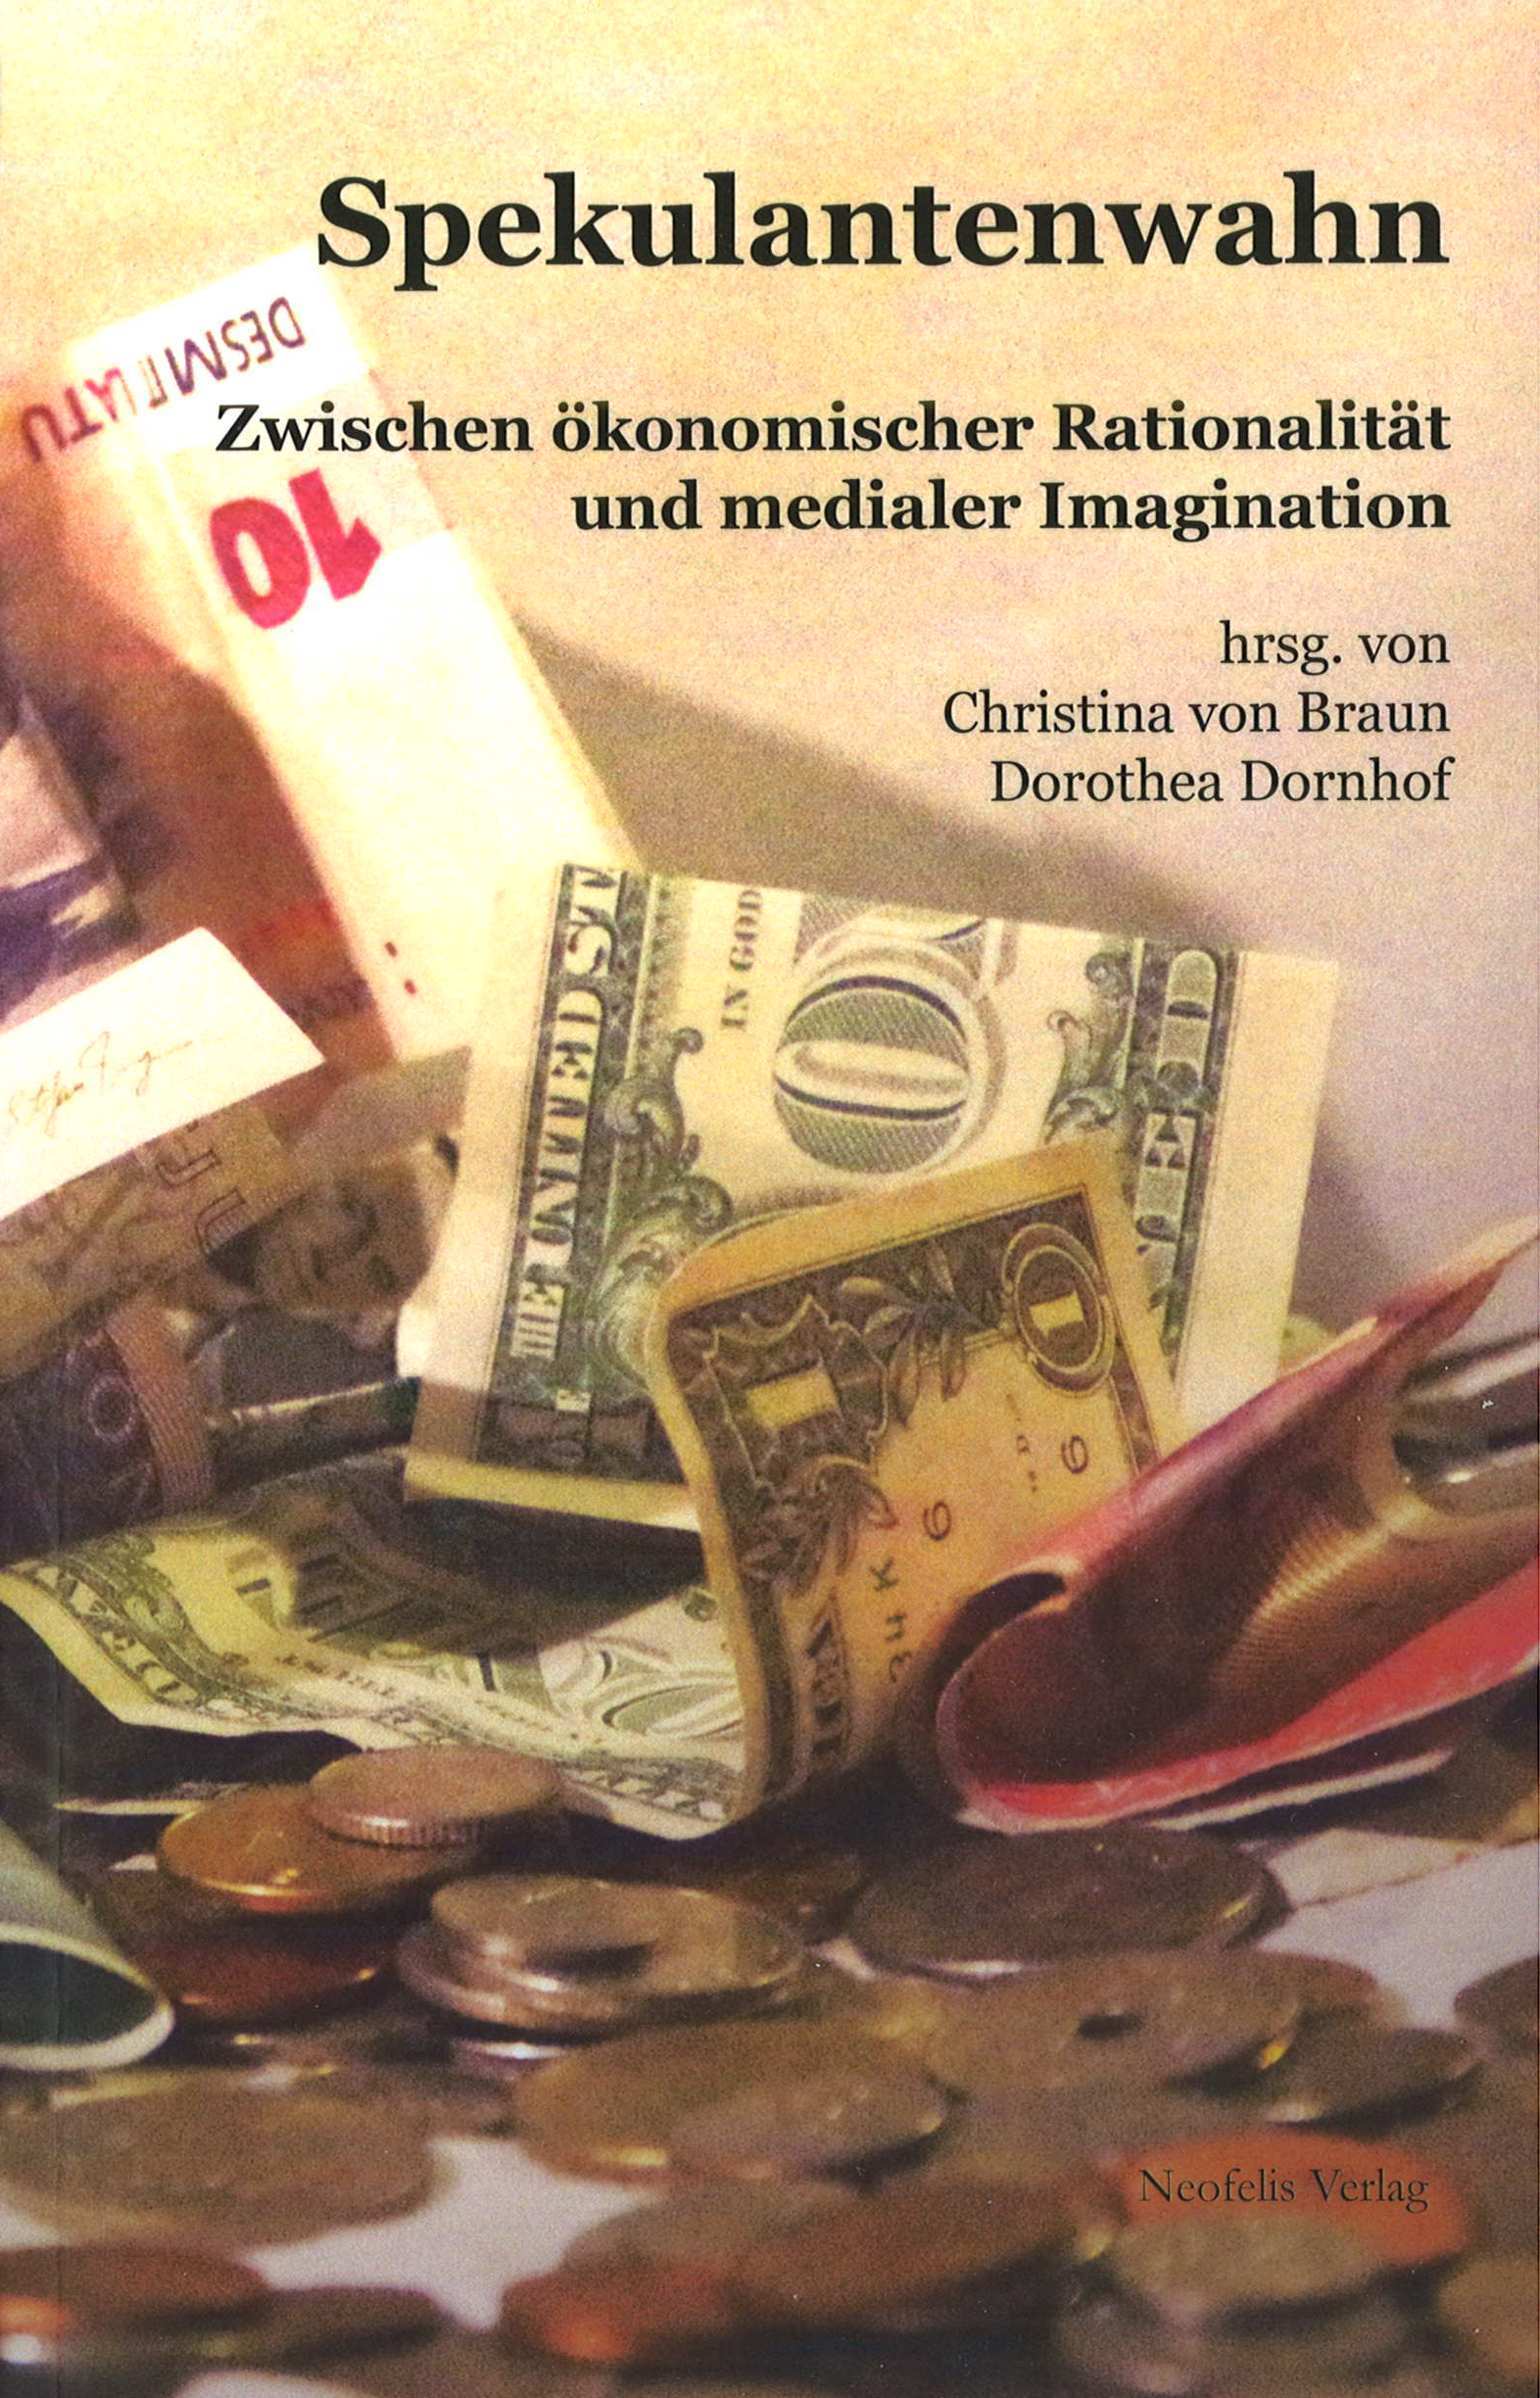 Buchcover: Christina von Braun - Spekulantenwahn